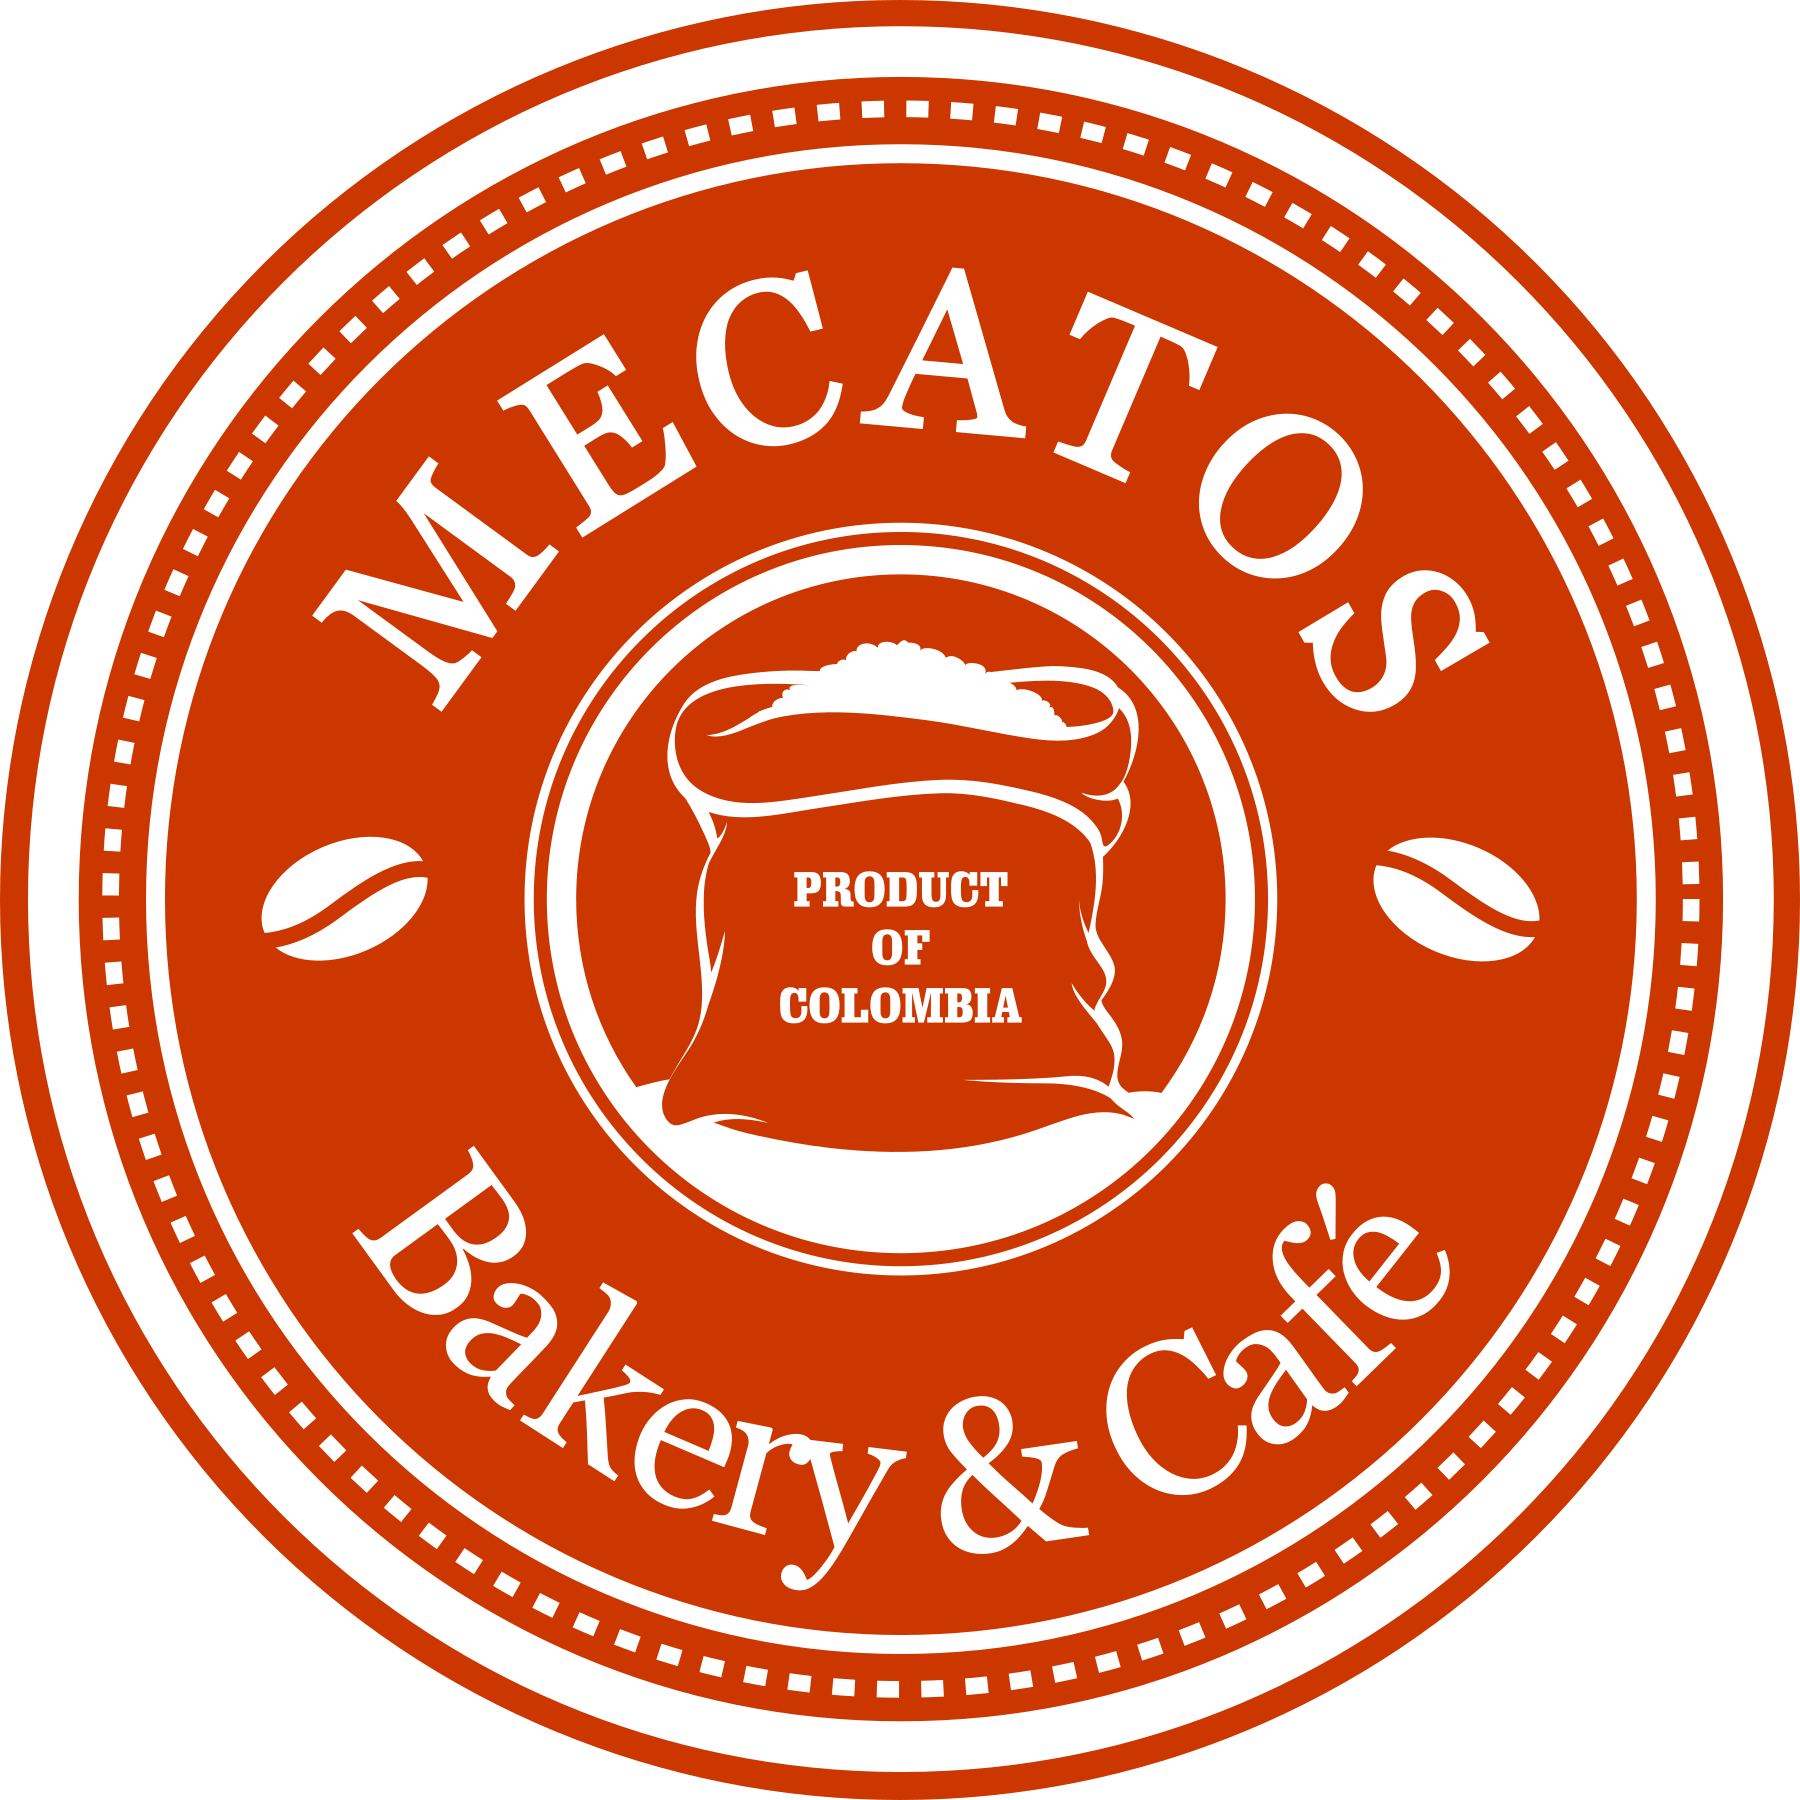 Mecatos Bakery & Café Logo